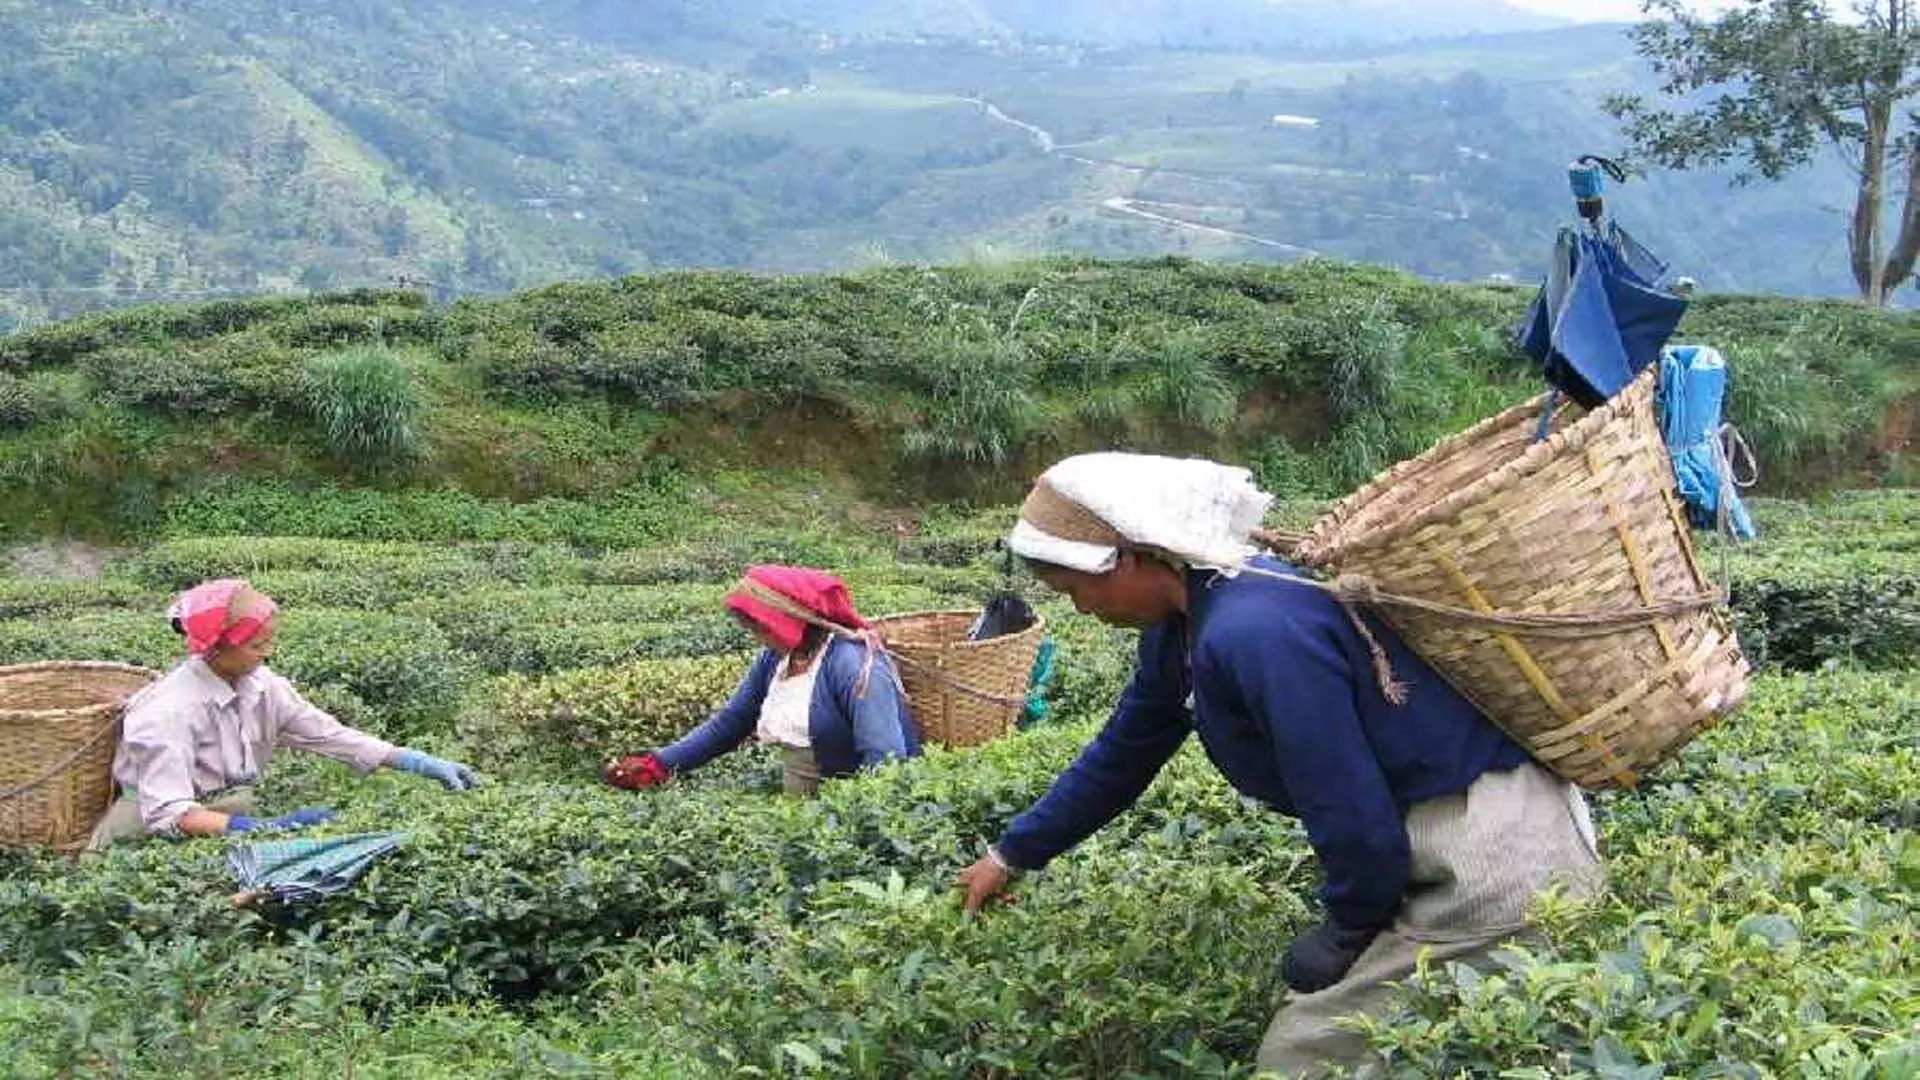 चाय श्रमिकों को जागरूक करने के लिए तृणमूल कांग्रेस का चाय व्यापार संघ डुआर्स में 11 दिवसीय मार्च शुरू करेगा